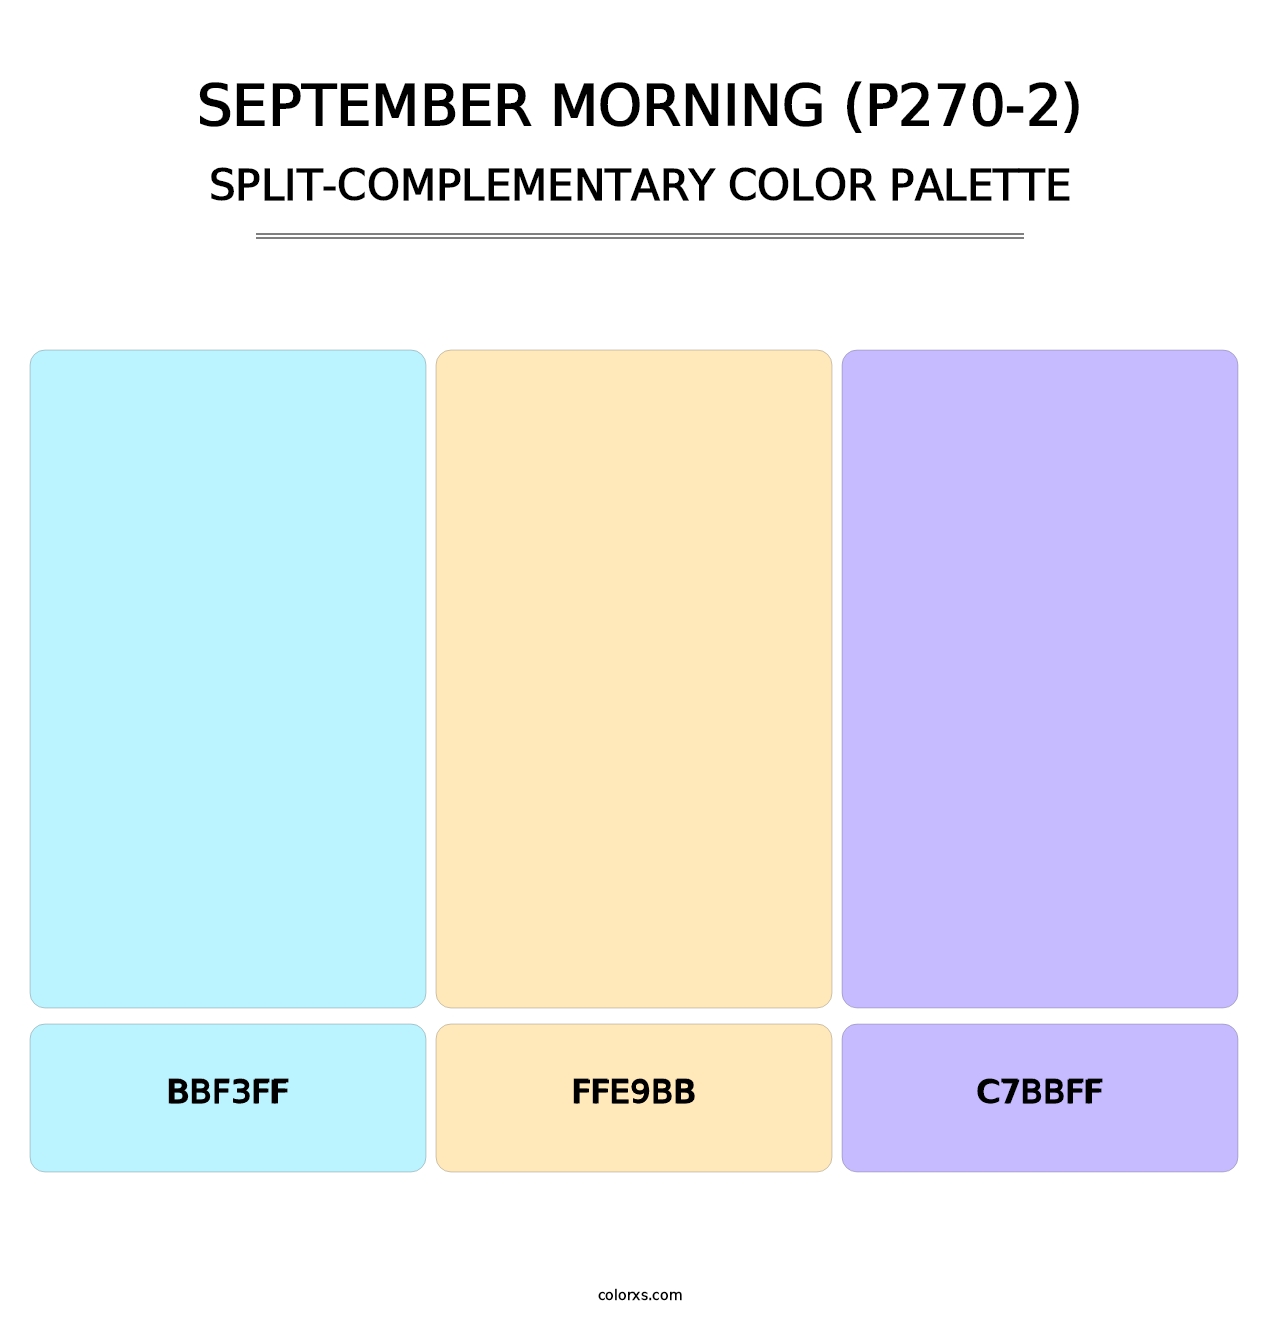 September Morning (P270-2) - Split-Complementary Color Palette